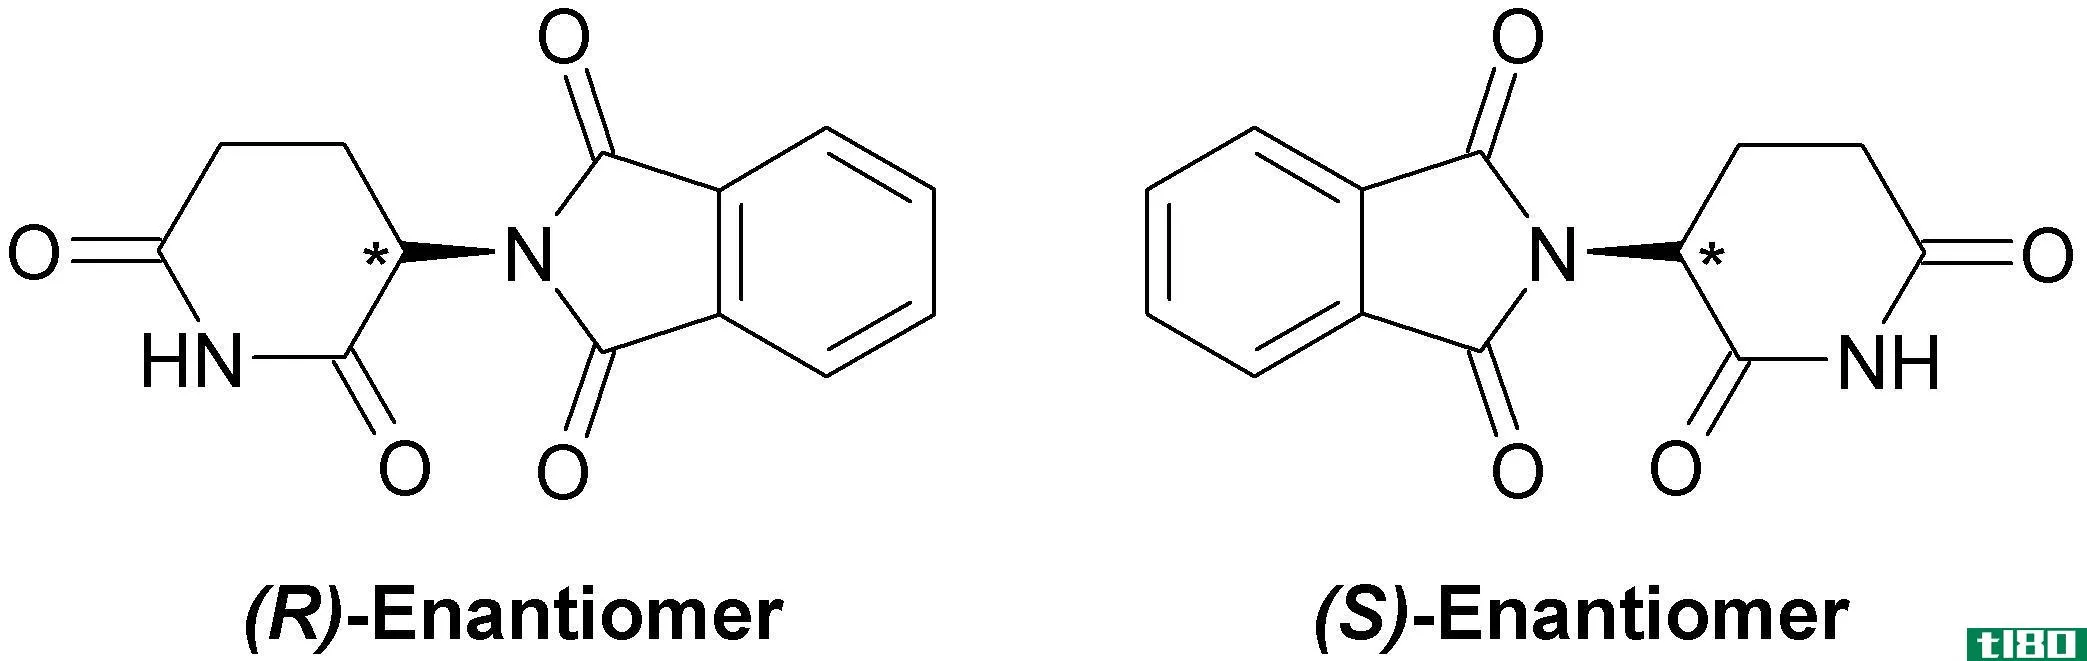 立体中心(stereocenter)和手性中心(chiral center)的区别